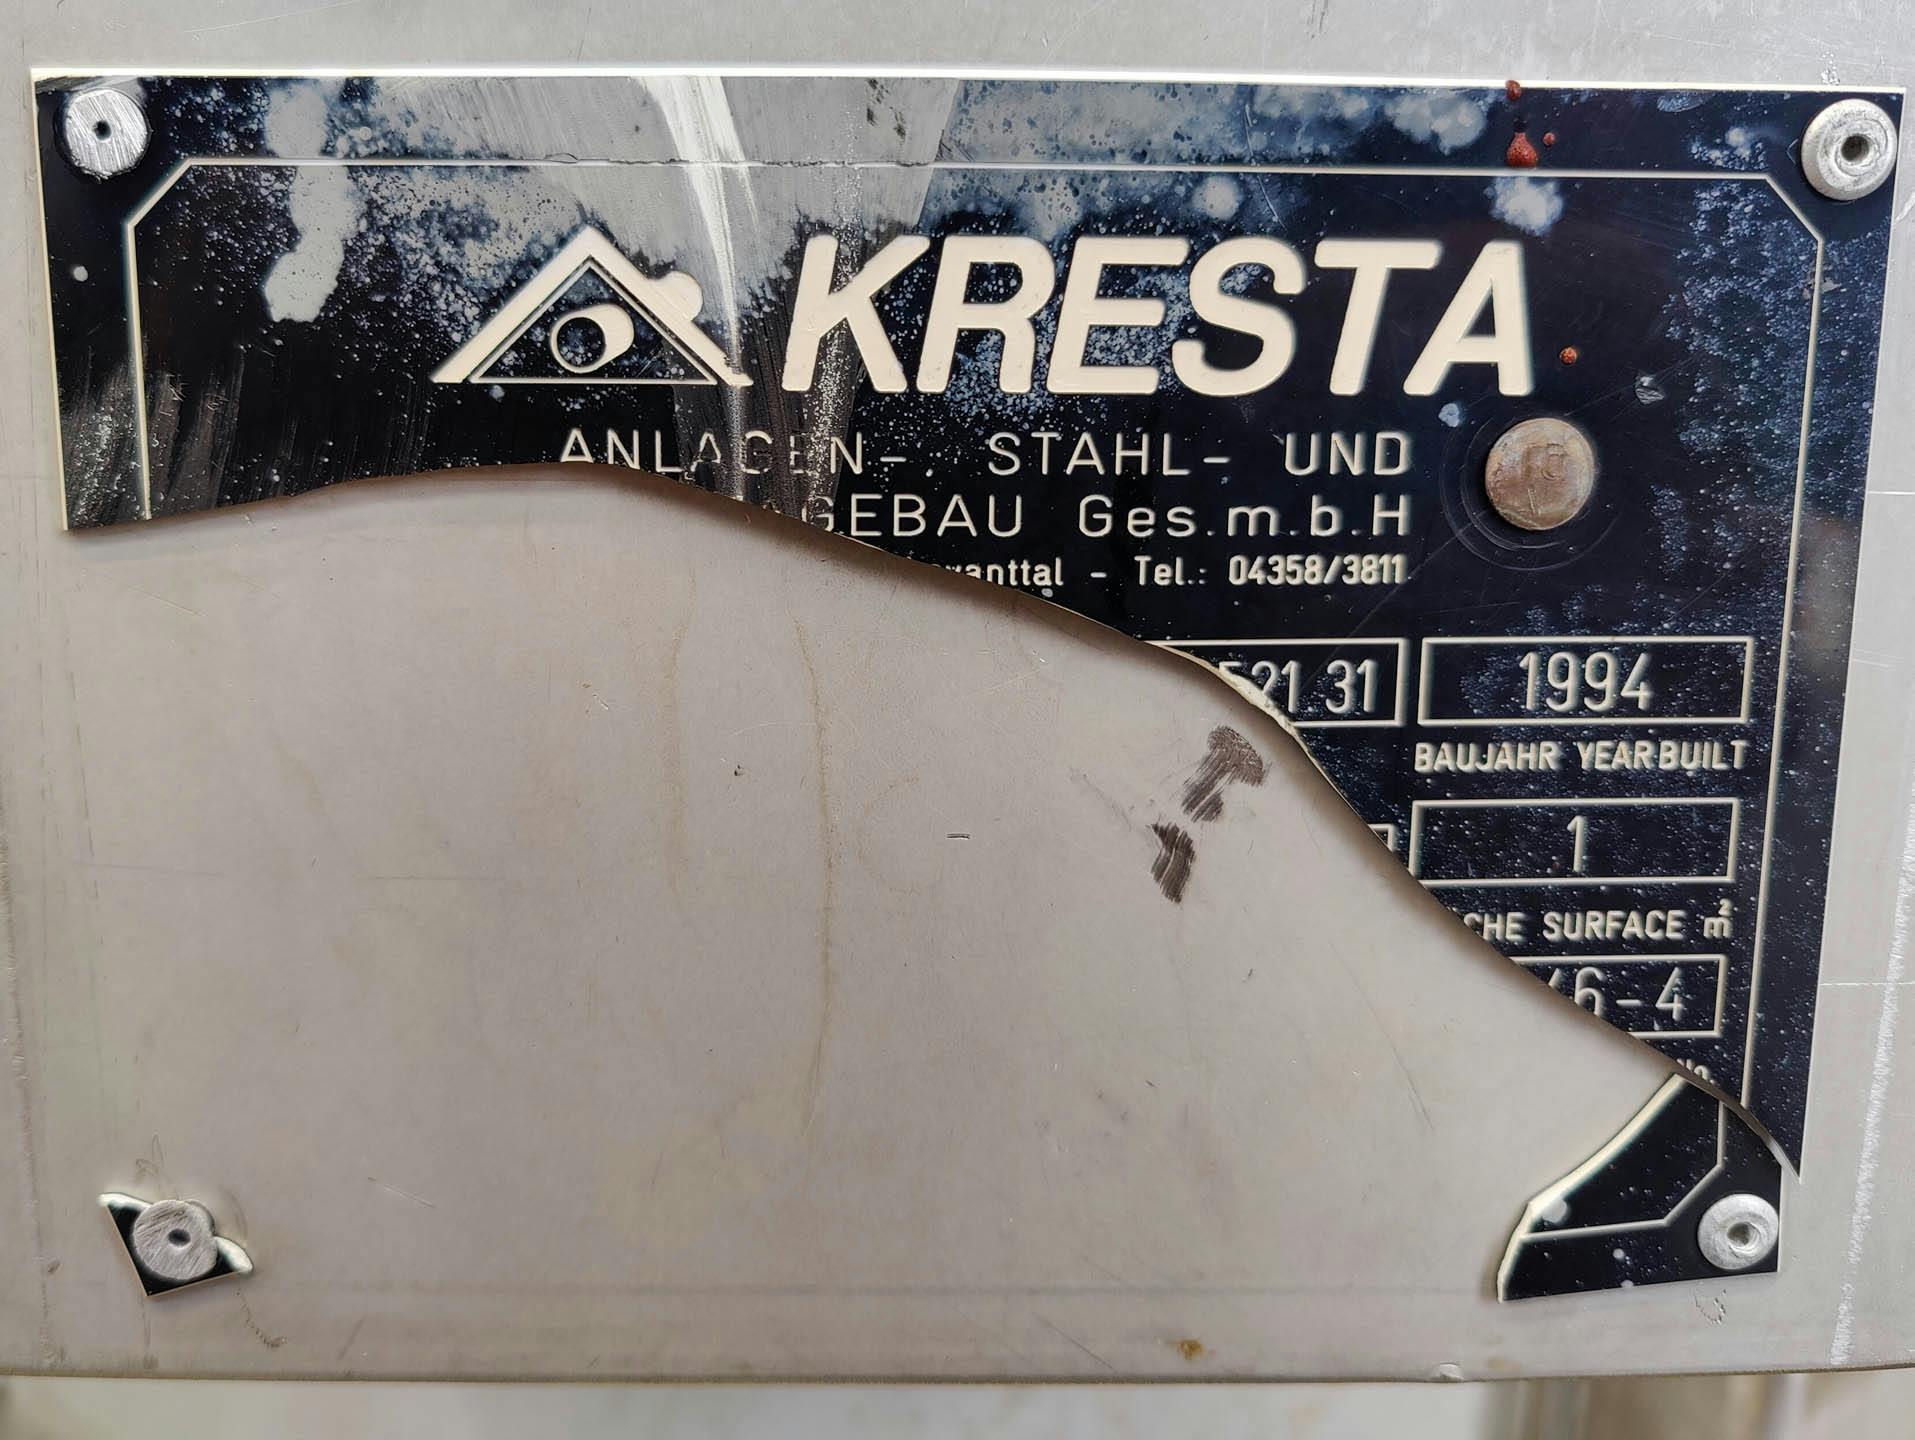 Kresta 250 Ltr. - Recipiente de presión - image 7